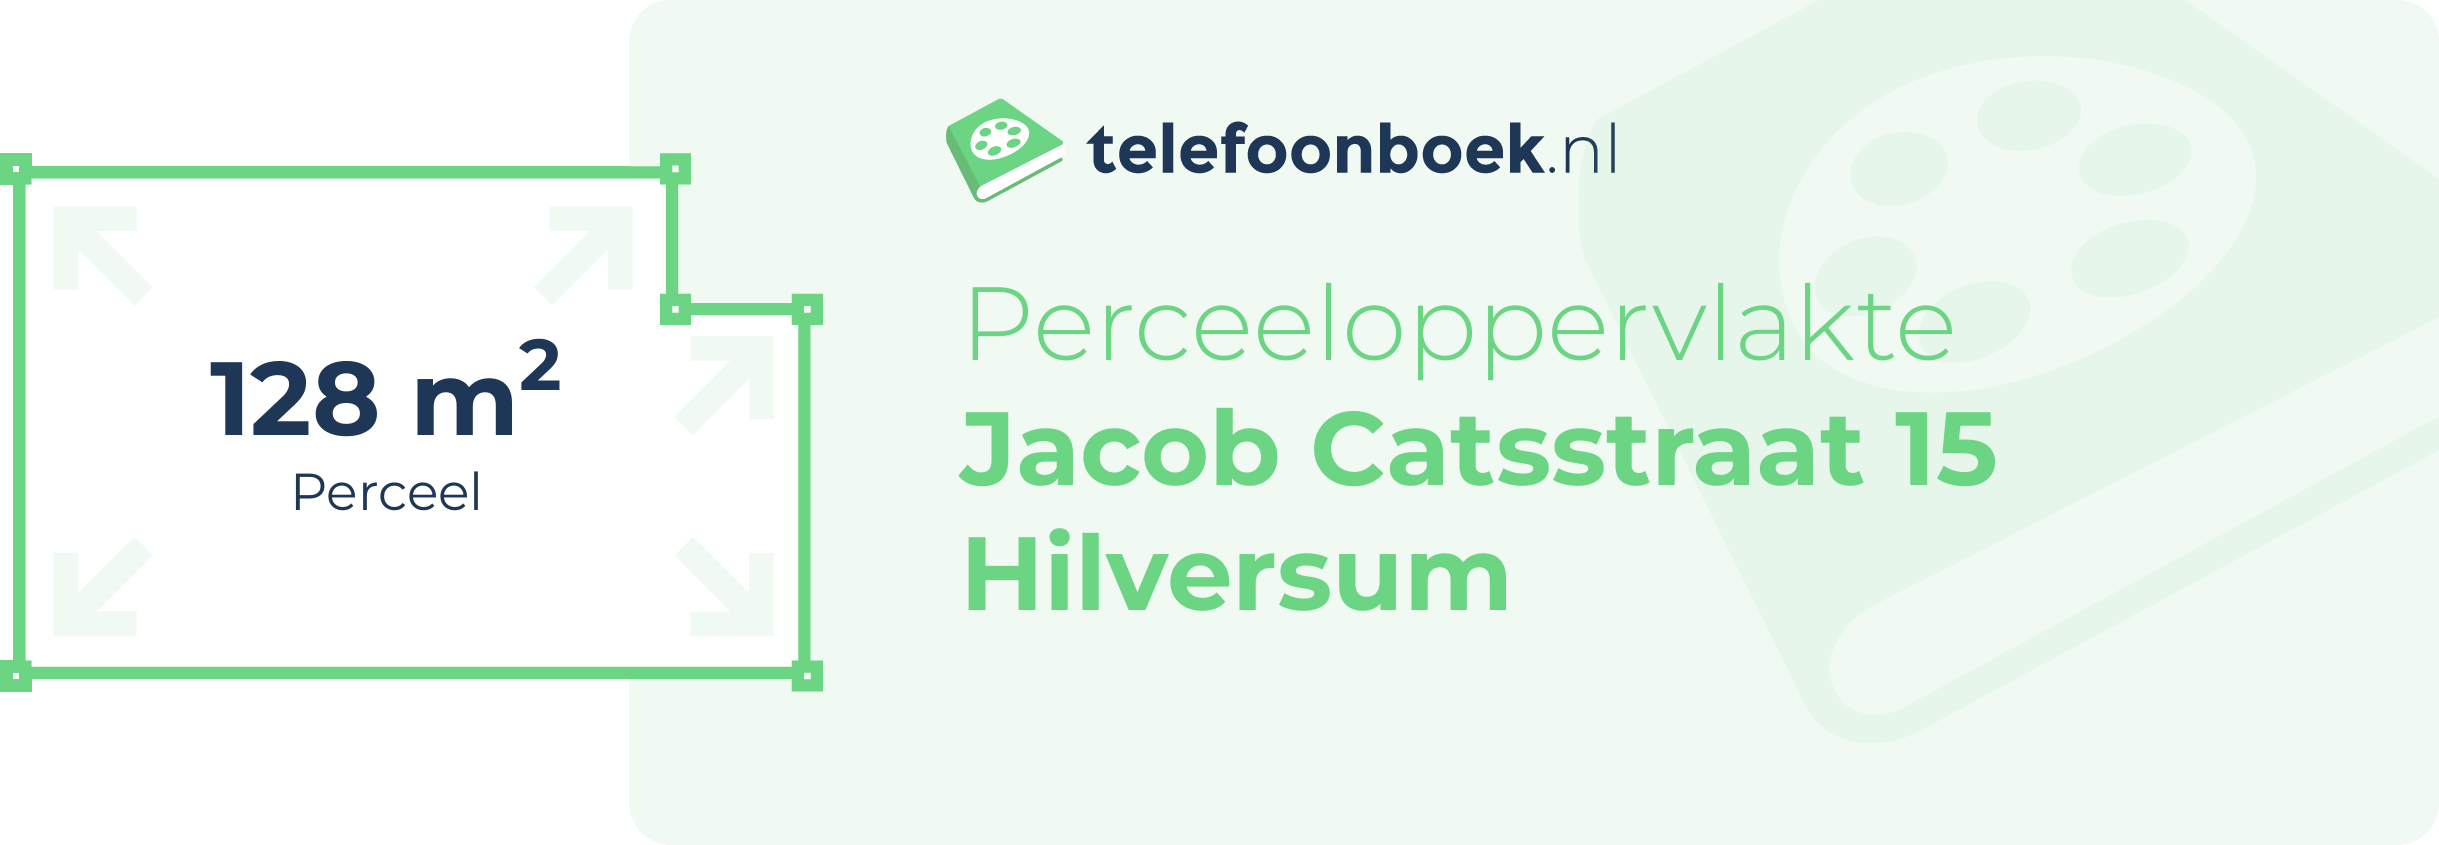 Perceeloppervlakte Jacob Catsstraat 15 Hilversum